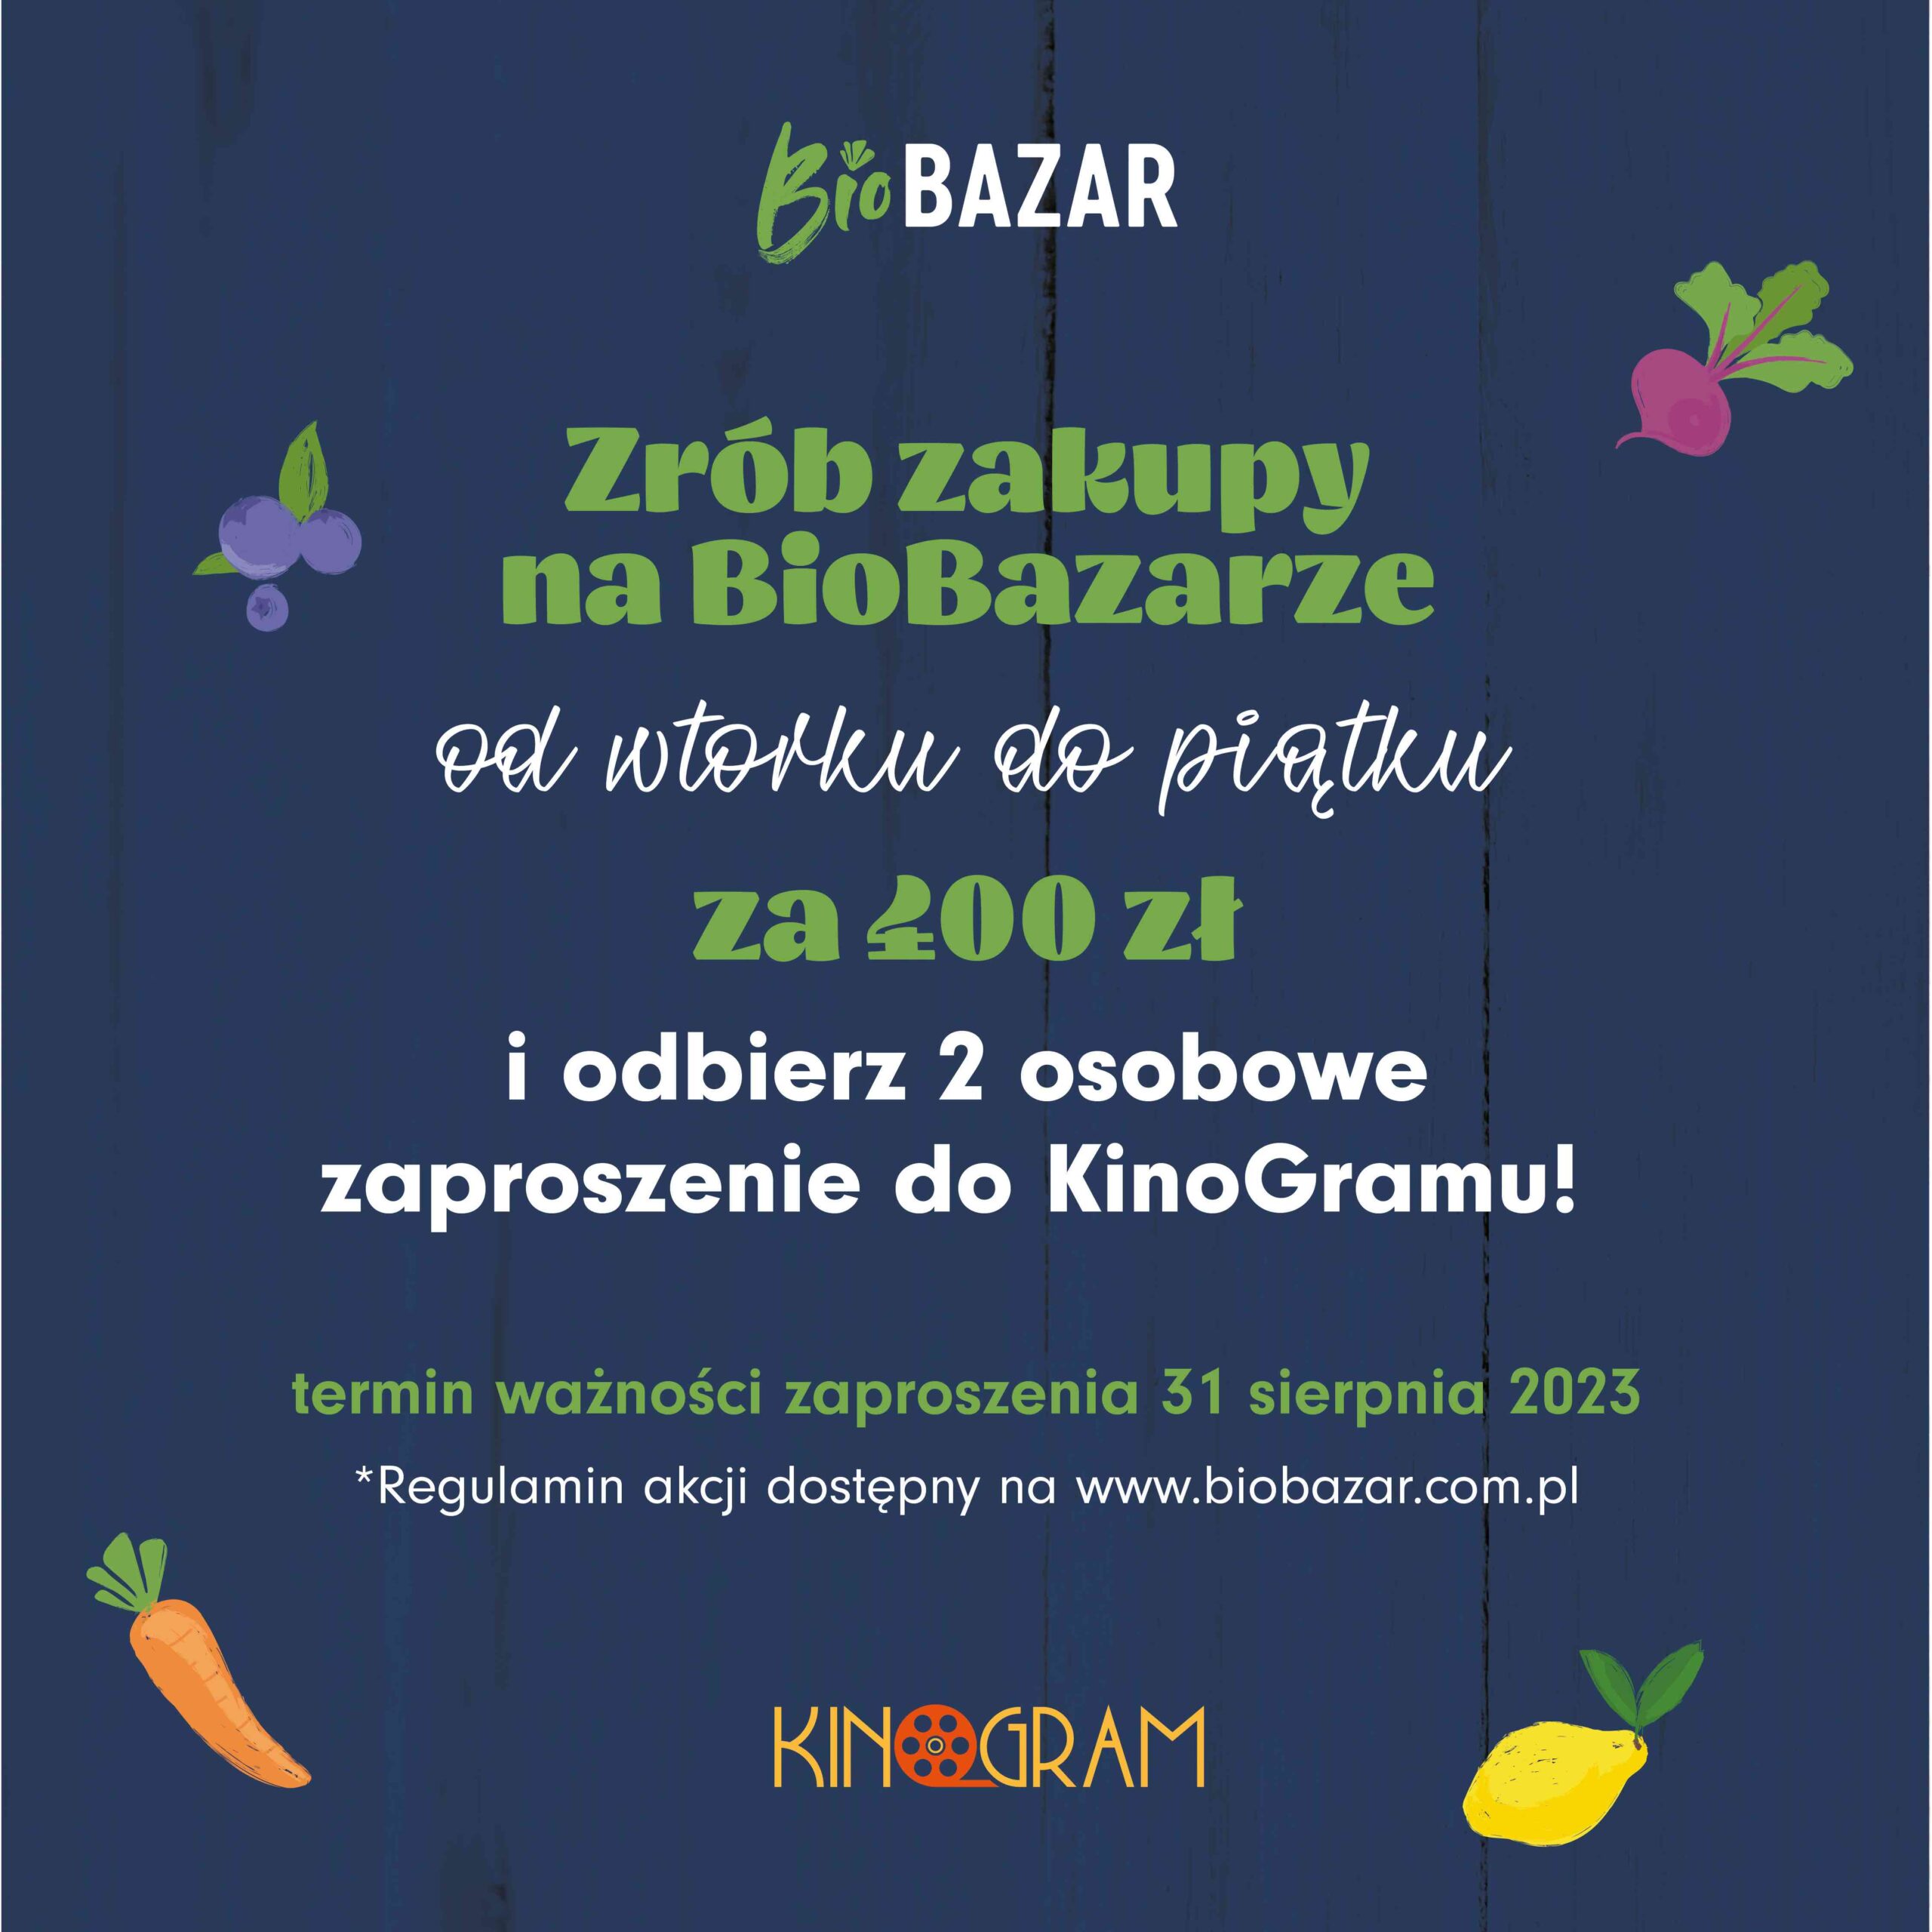 Bilety do KinoGramu za zakupy na BioBazarze